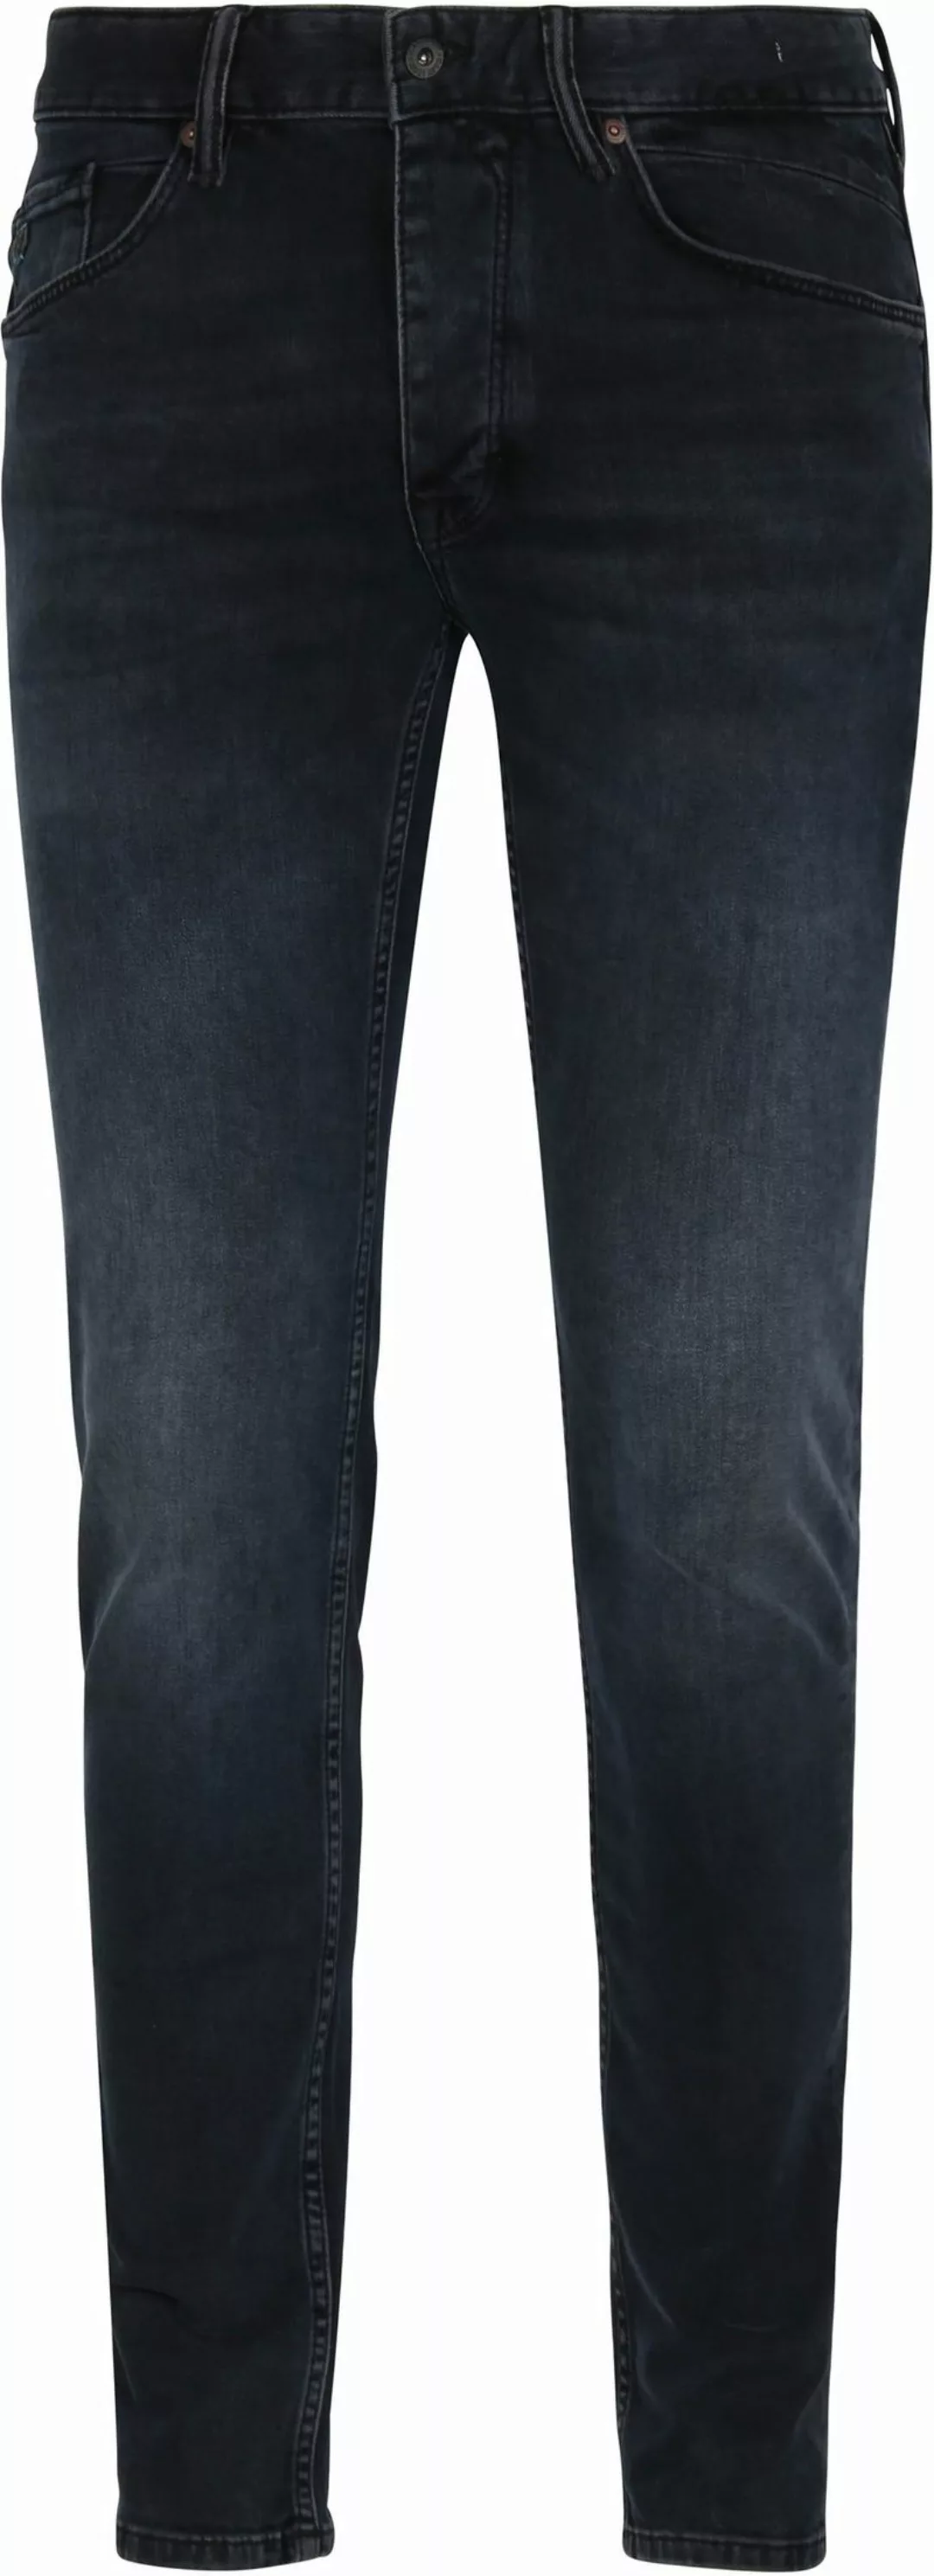 Cast Iron Riser Slim Jeans Vintage Washed Denim Schwarz - Größe W 31 - L 34 günstig online kaufen